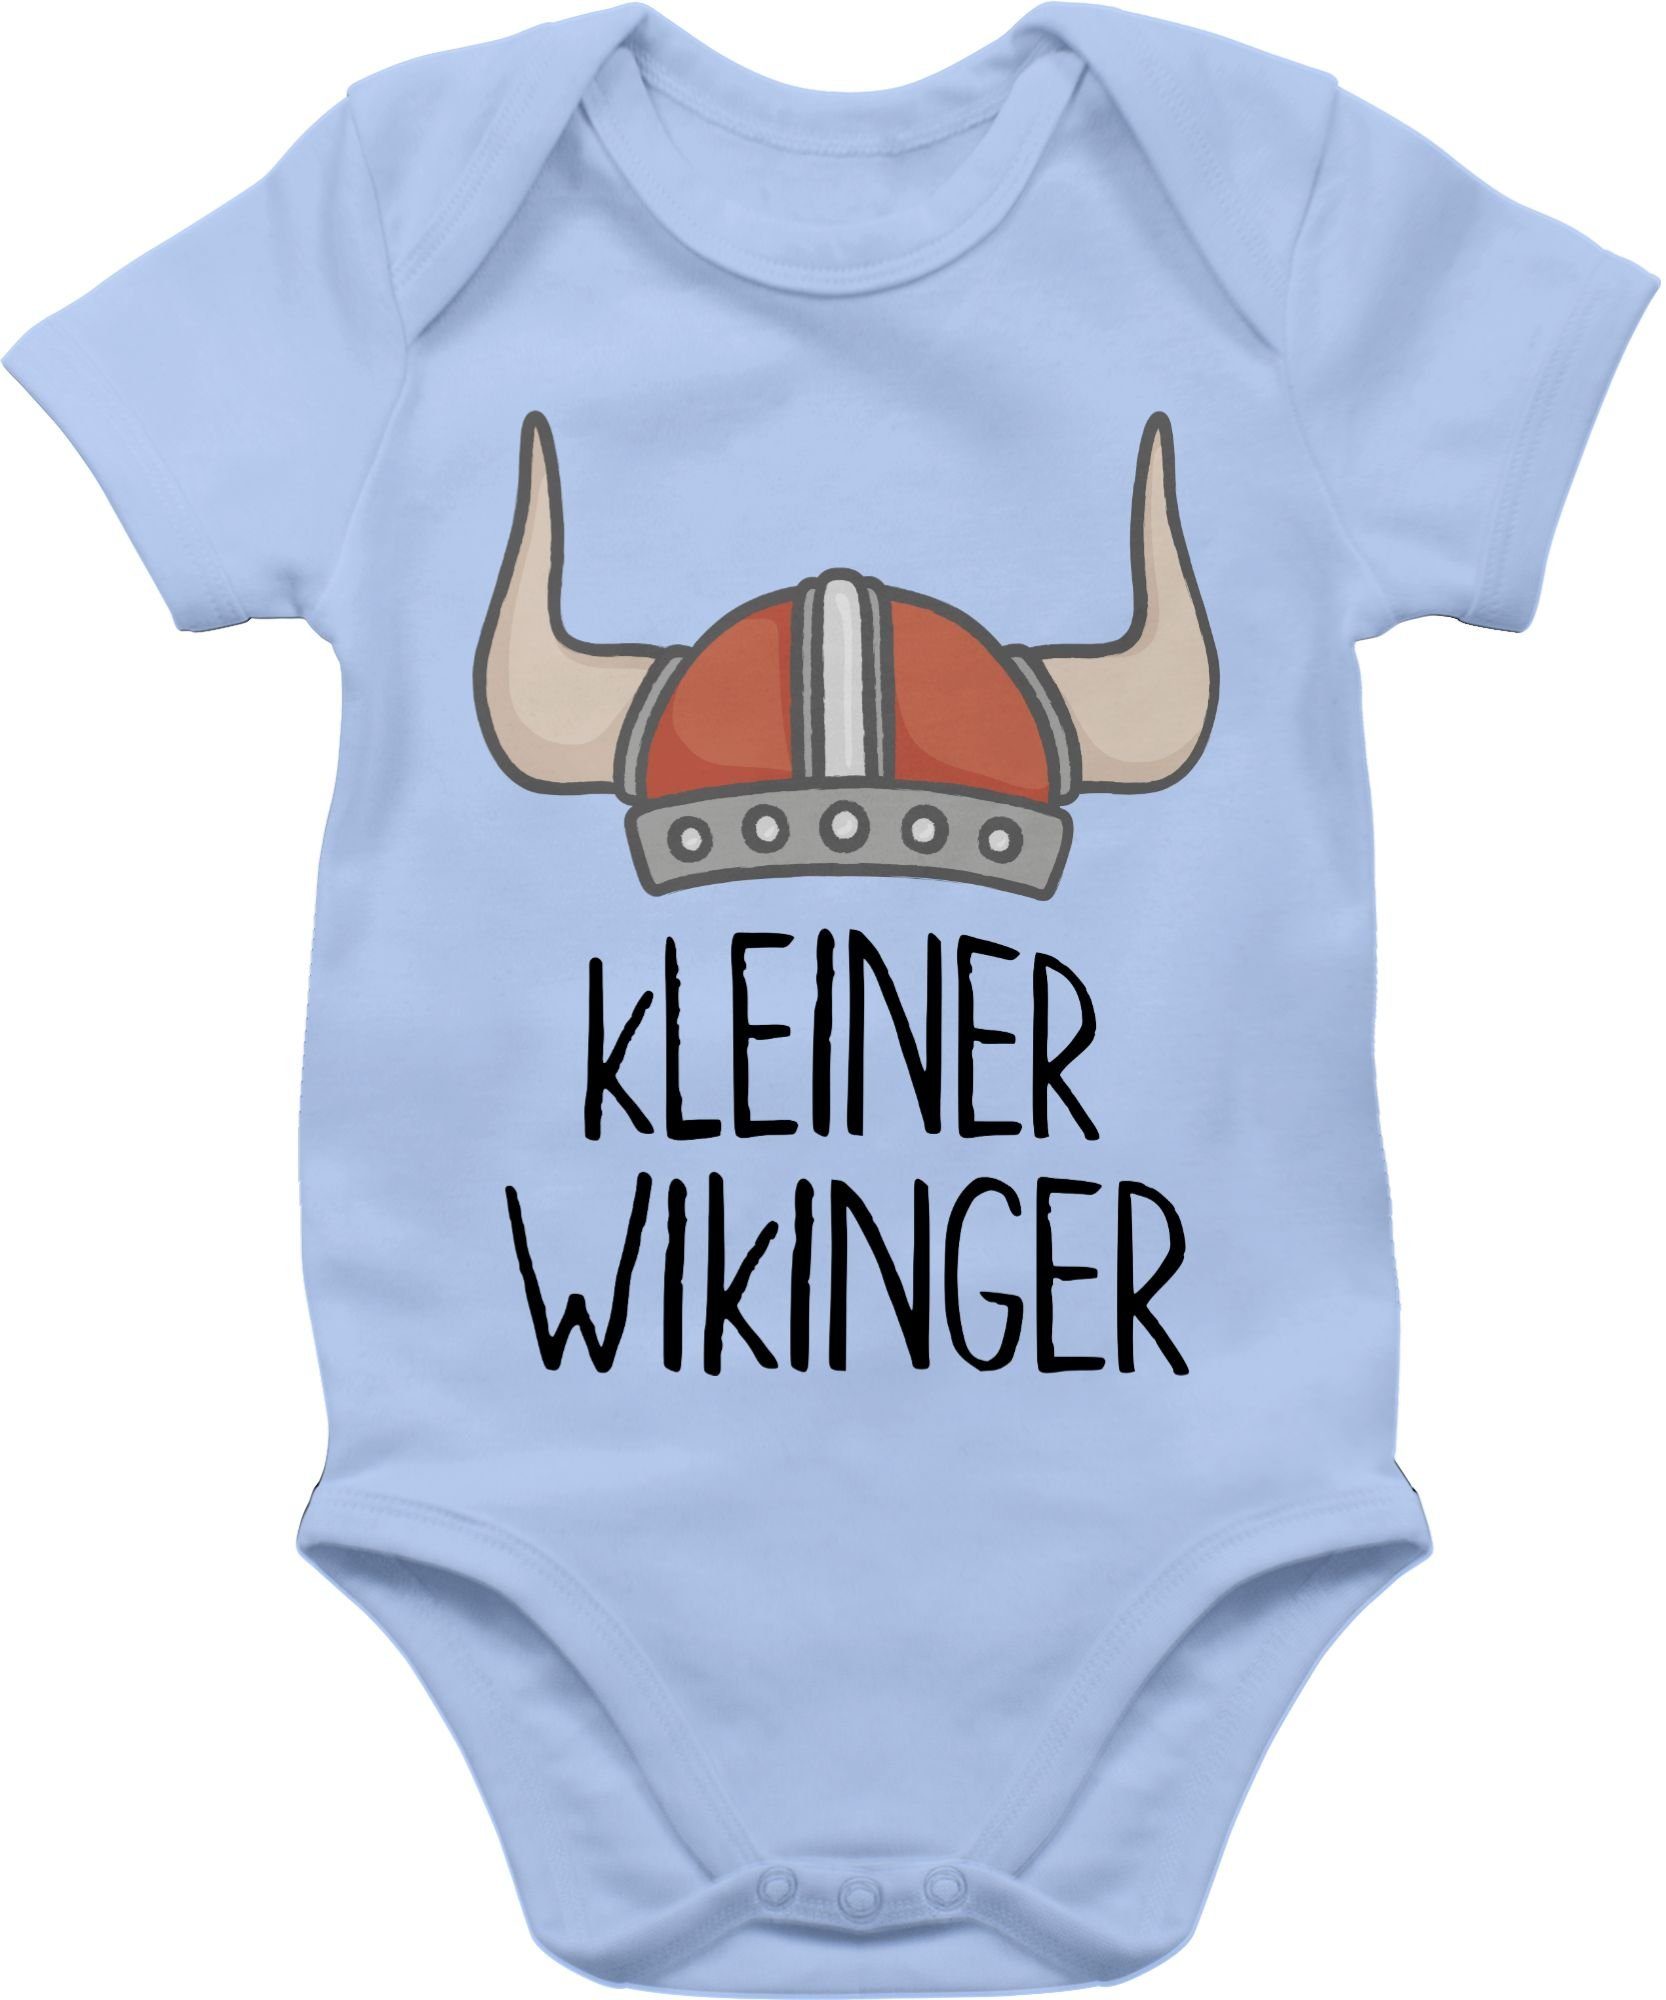 & Wikinger Shirtbody 3 Shirtracer Walhalla Wikinger kleiner Baby Babyblau